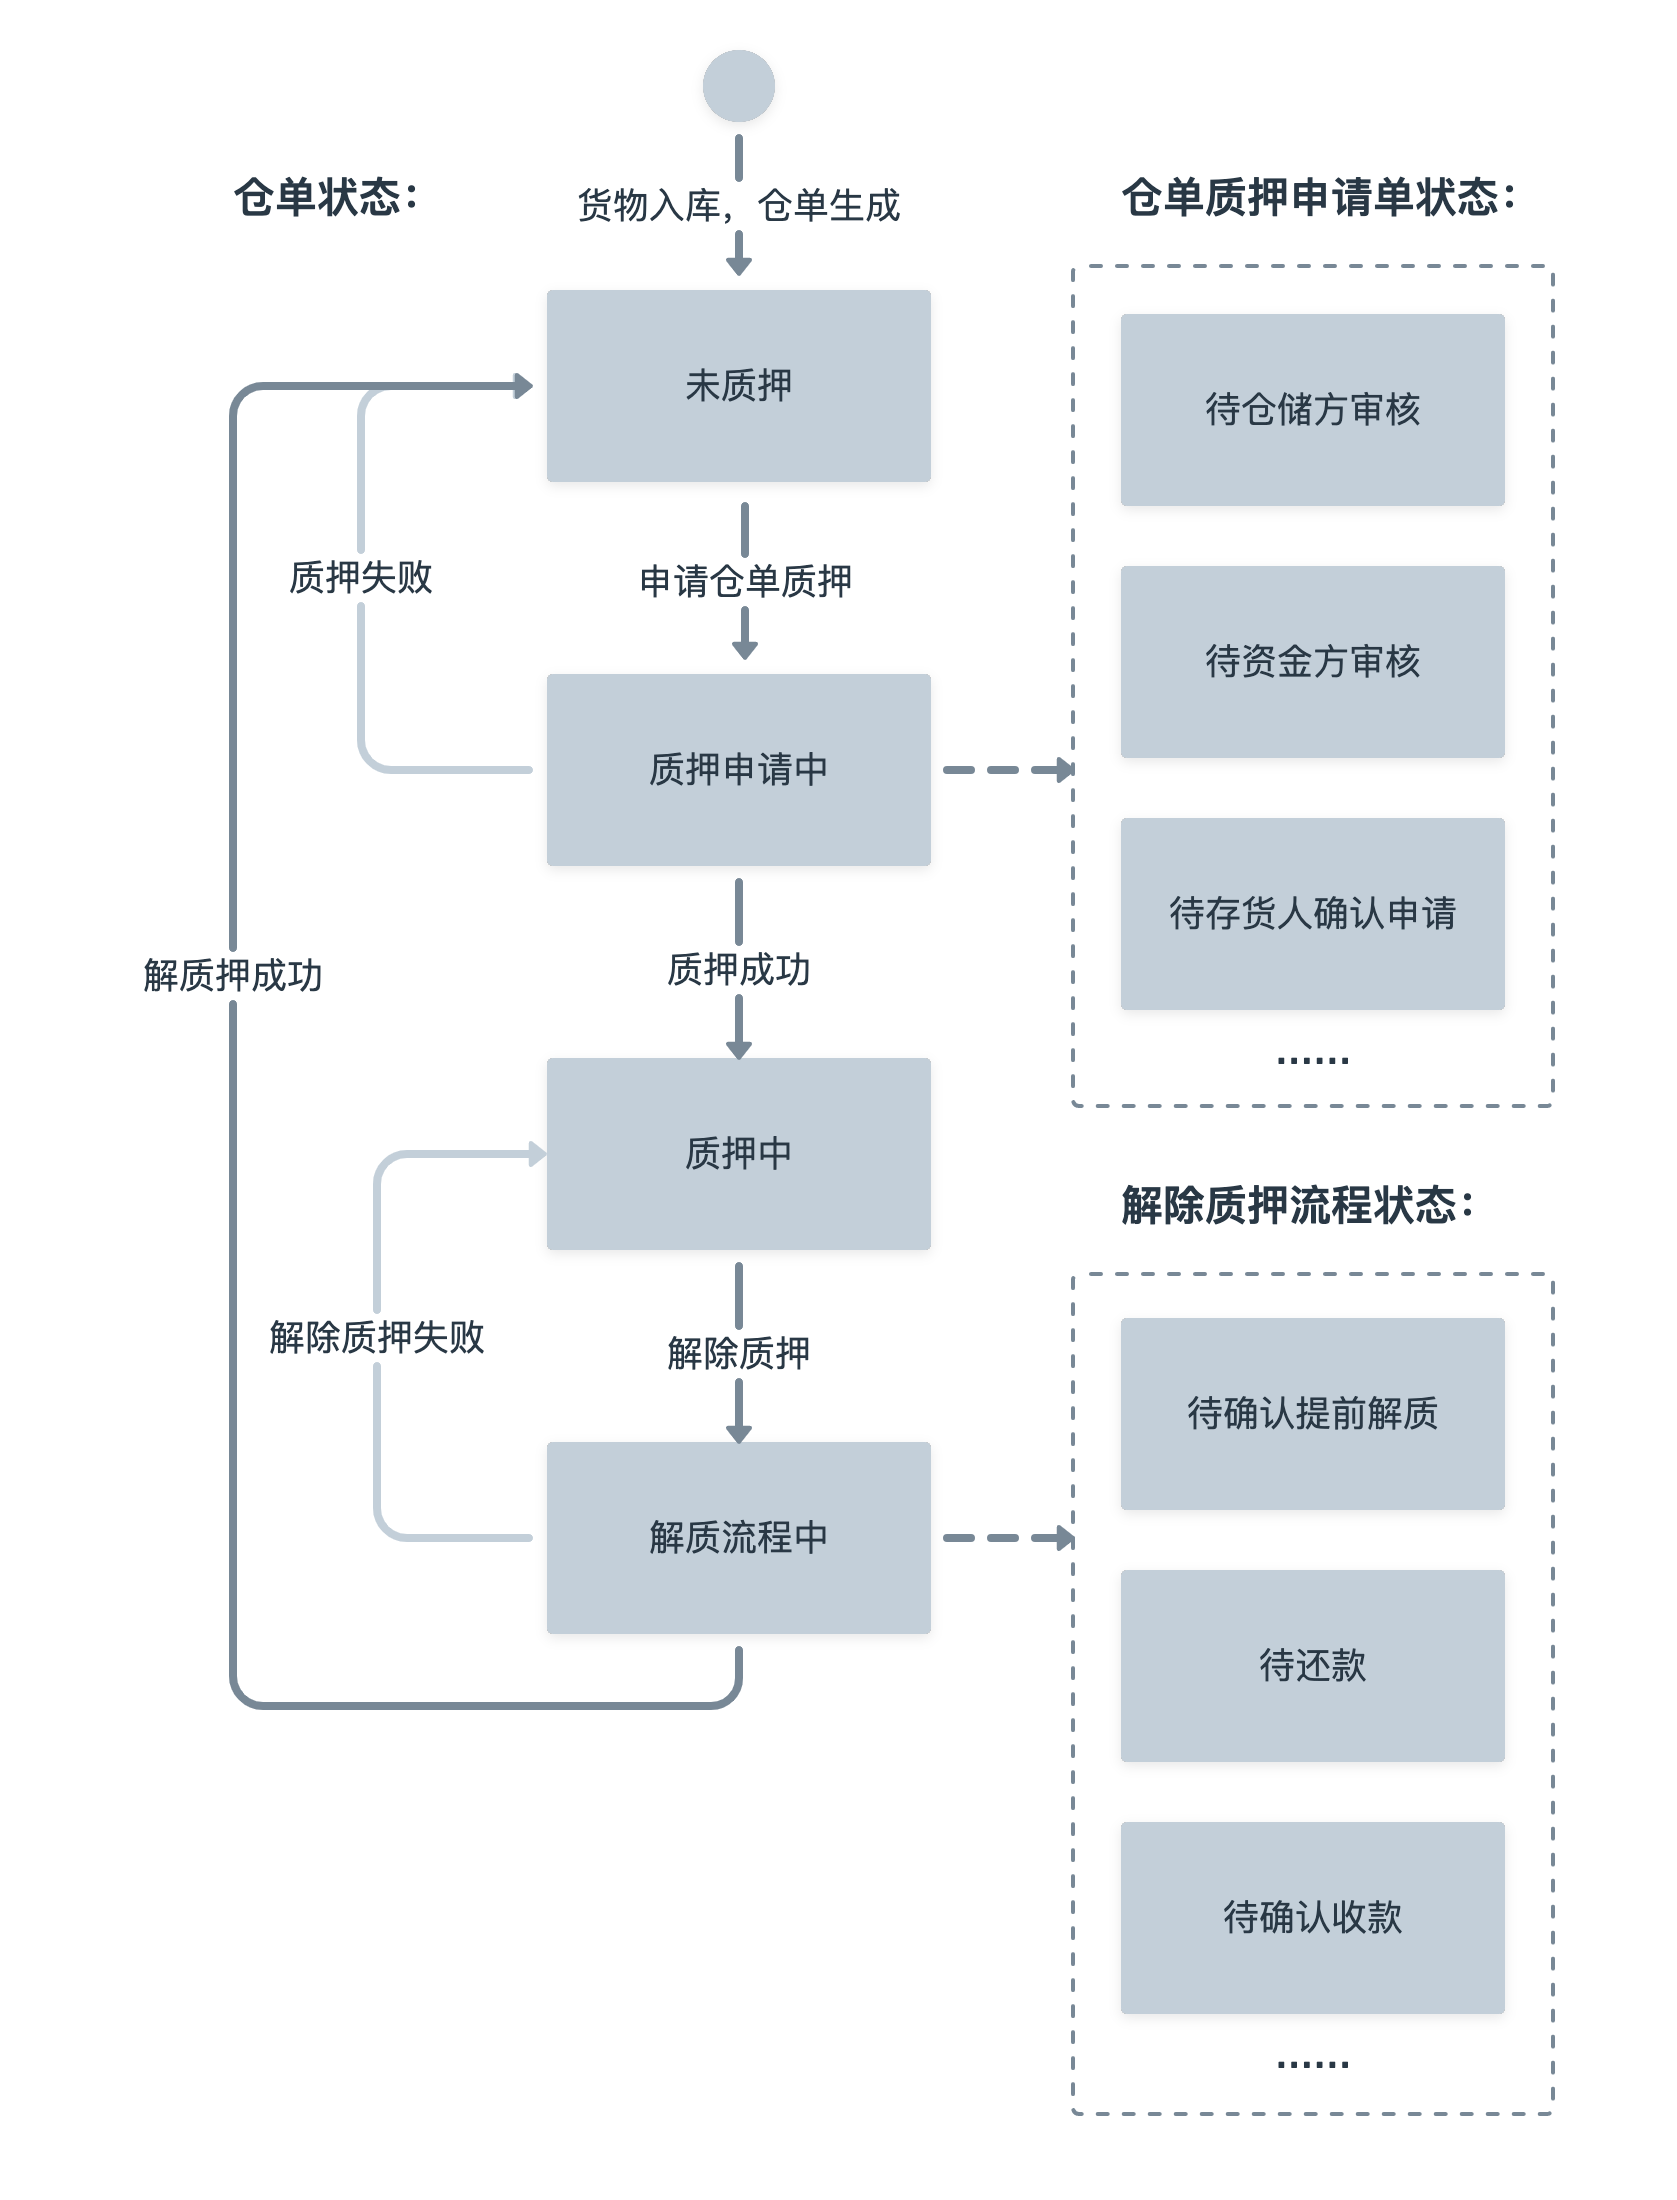 【产品流程】B 类产品设计细节：流程状态 - 图8